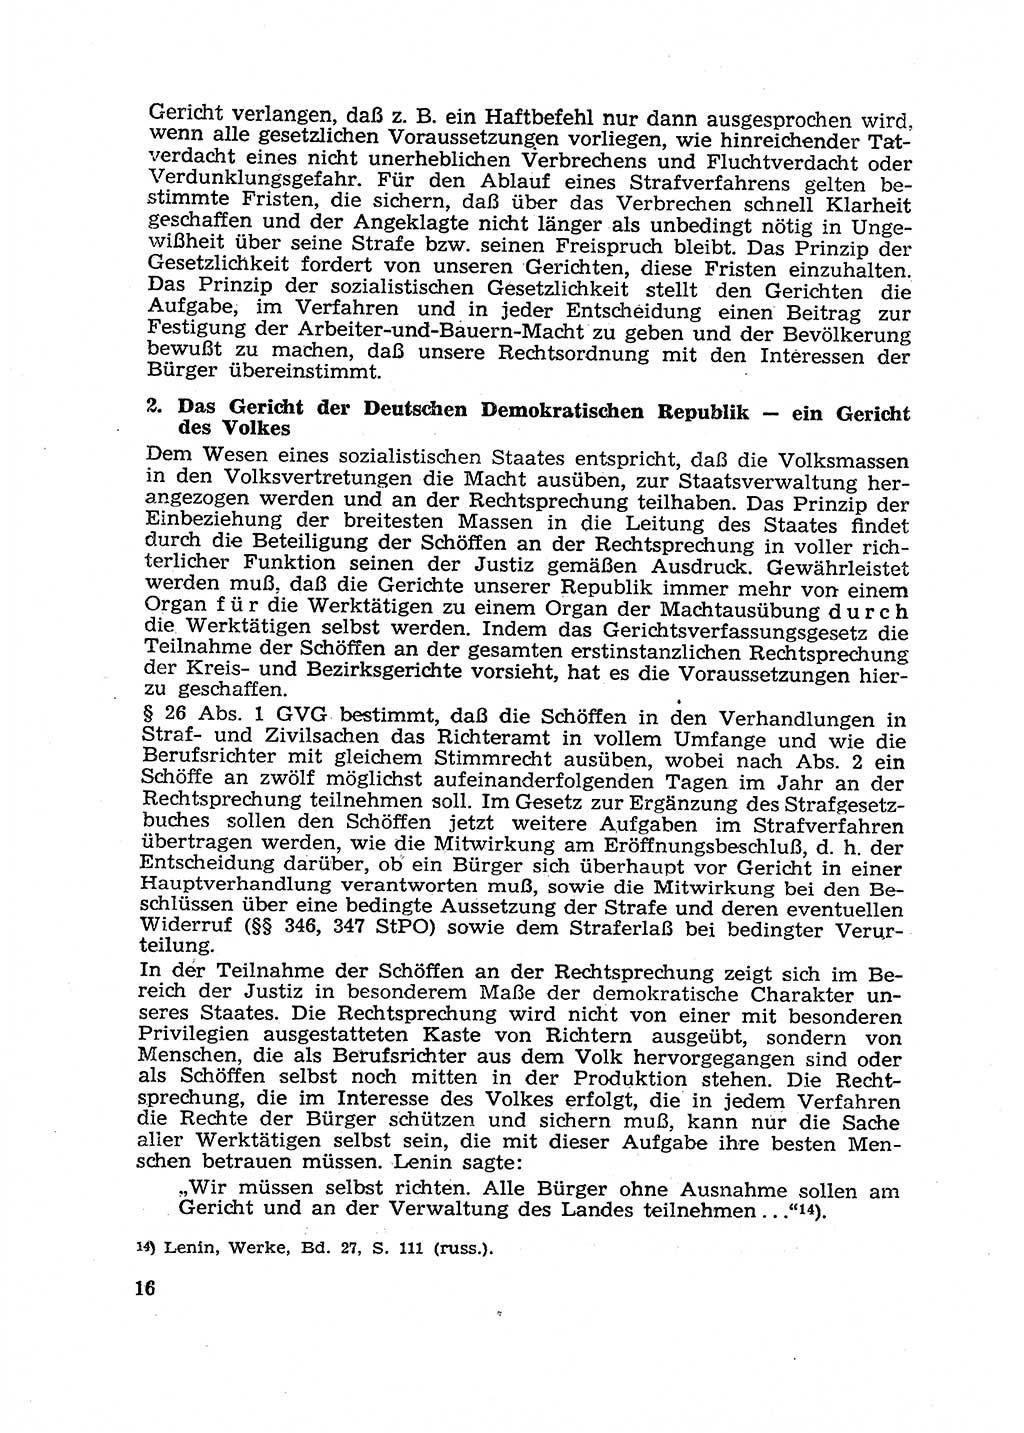 Gericht und Rechtsprechung in der Deutschen Demokratischen Republik (DDR) 1956, Seite 16 (Ger. Rechtspr. DDR 1956, S. 16)